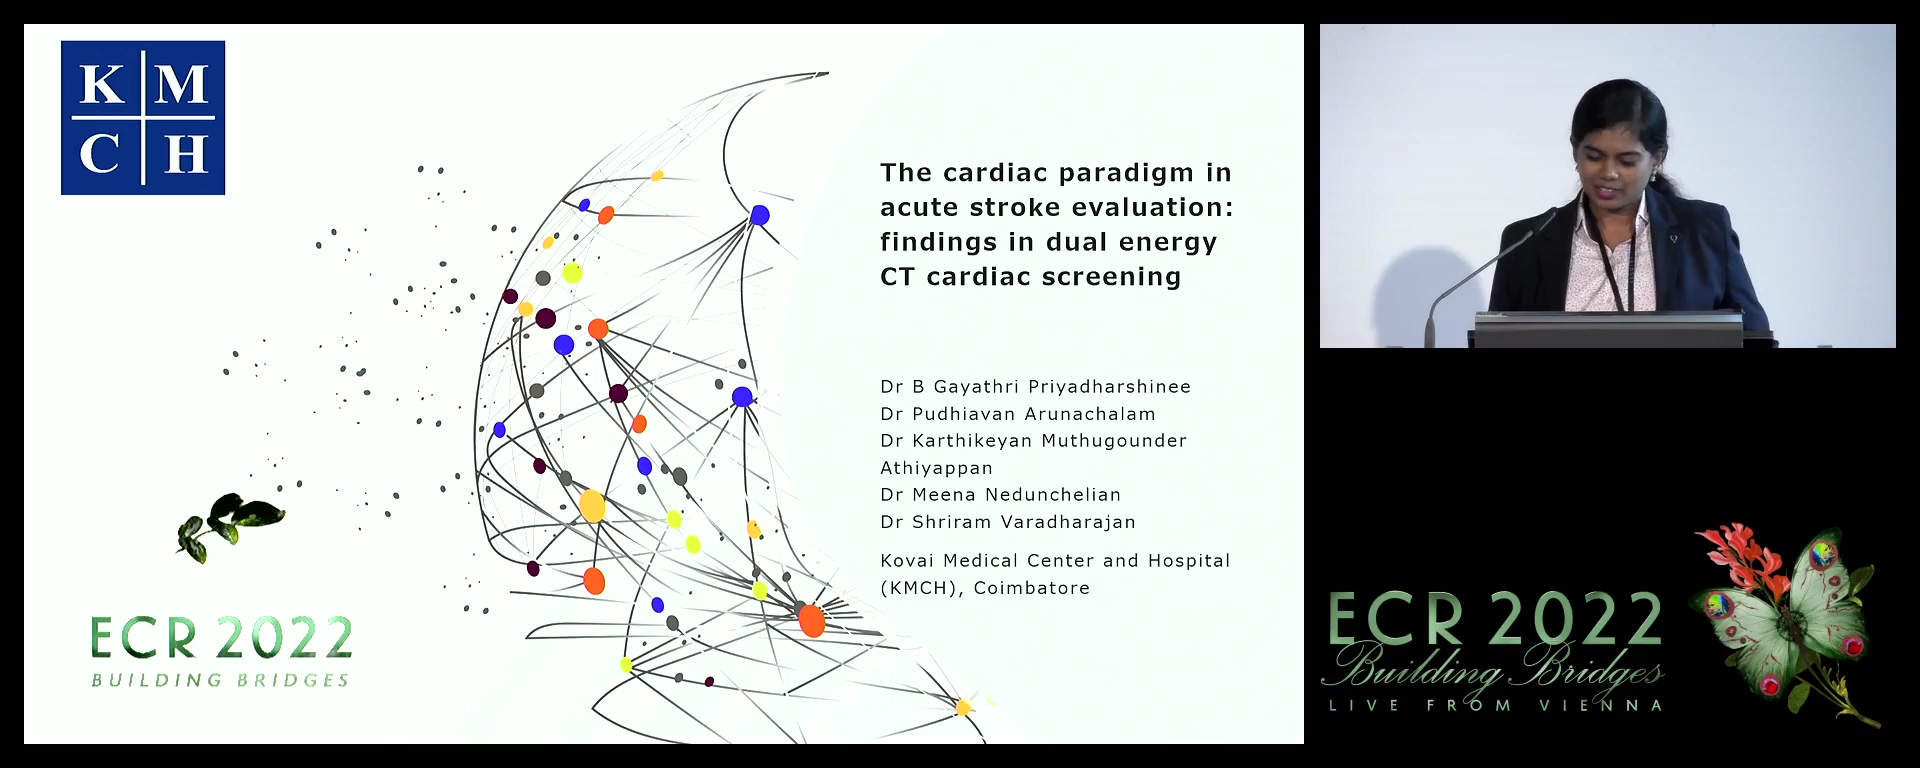 The cardiac paradigm in acute stroke evaluation: findings in dual energy CT cardiac screening - Gayathri Priyadharshinee, Coimbatore, Tamil Nadu / IN